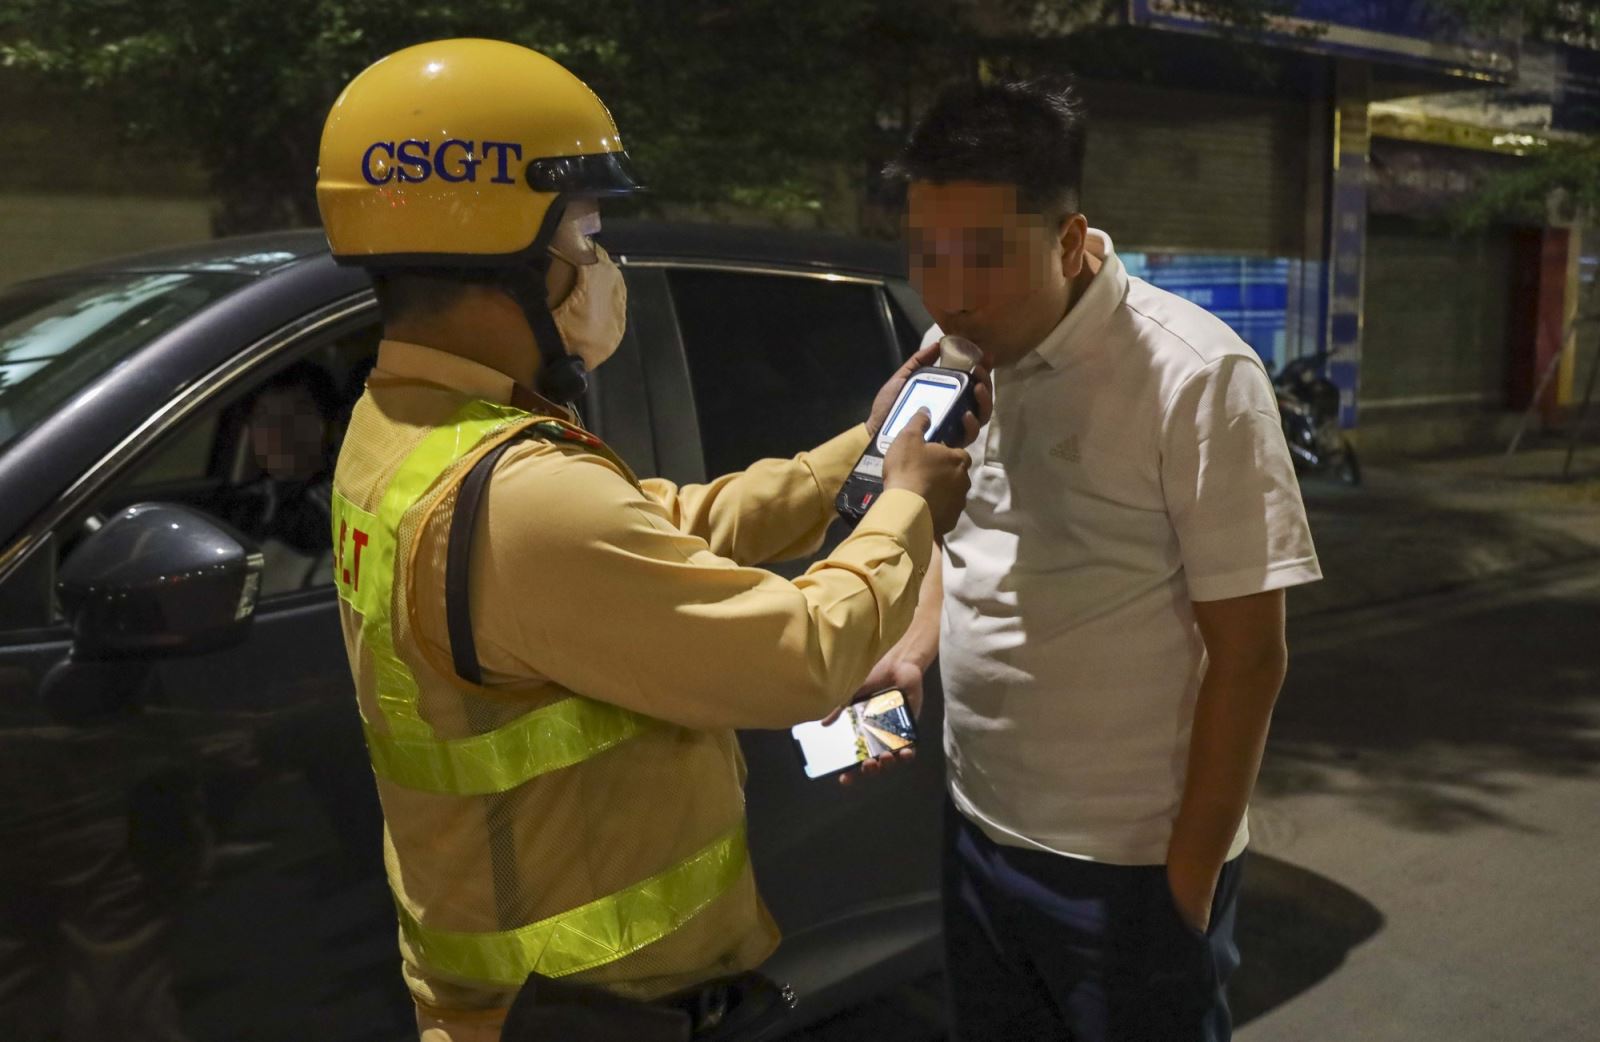 Nam tài xế N.T.T (Sinh năm 1984, quê quán Phú Thọ) thừa nhận đã sử dụng rượu, bia với tổ công tác. Qua kiểm tra, tài xế T vi phạm ở mức 0,237 mg/l khí thở.